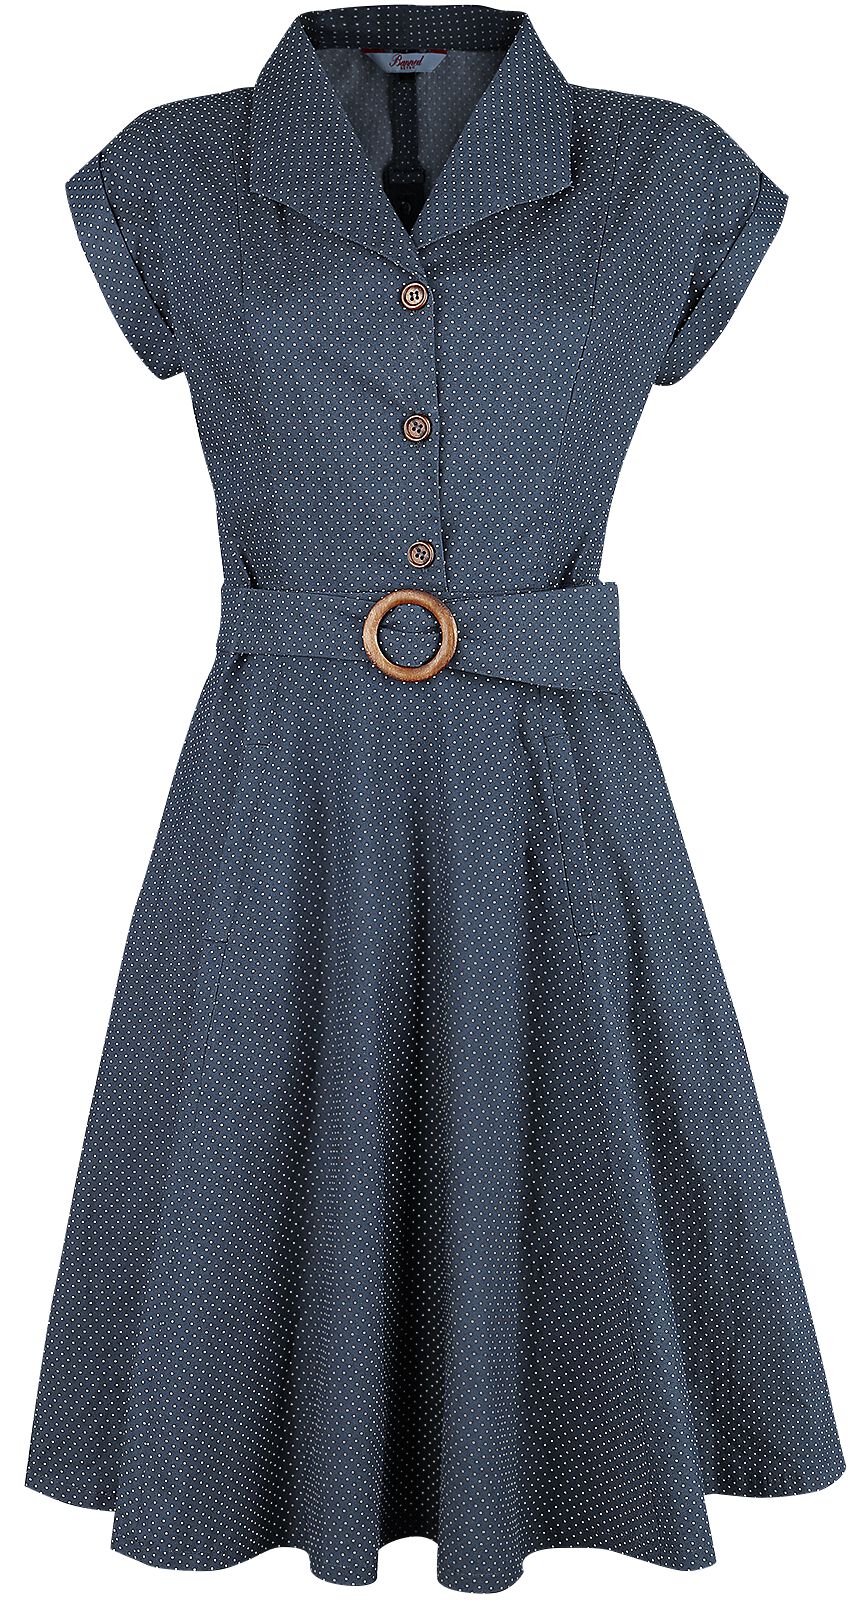 Banned Retro - Rockabilly Kleid knielang - Spot Perfection Fit & Flare Dress - XS bis 4XL - für Damen - Größe L - navy